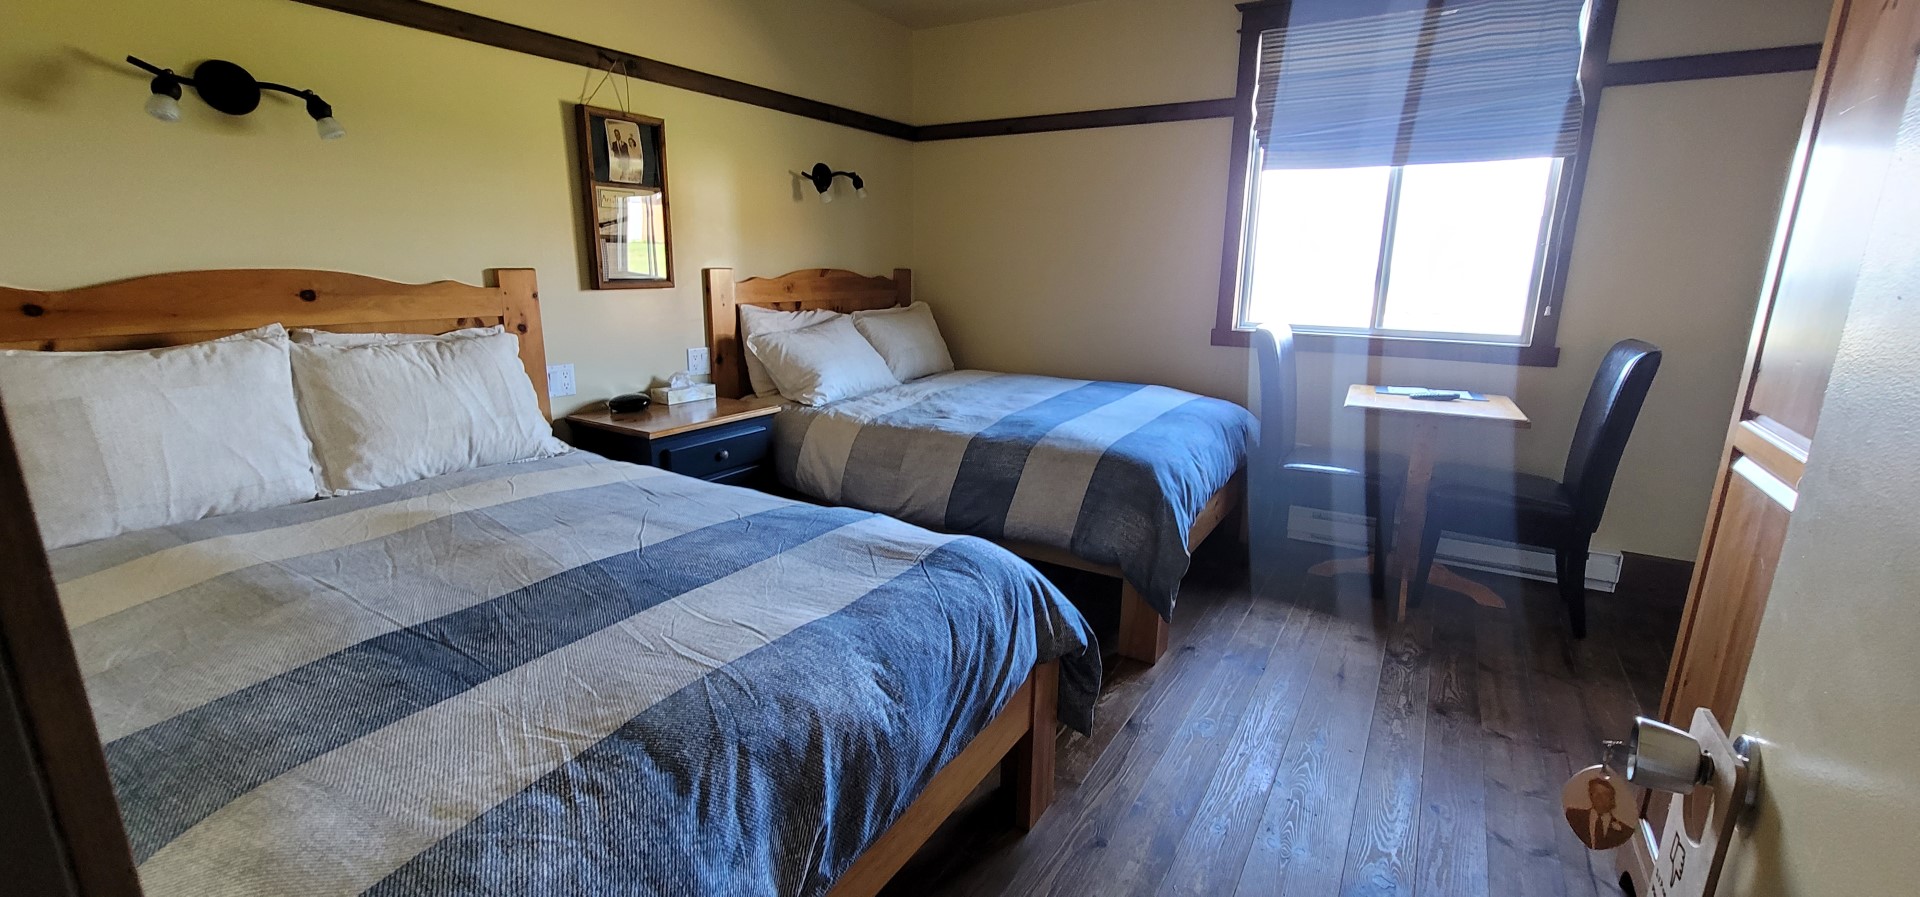 hotel bedroom at resort